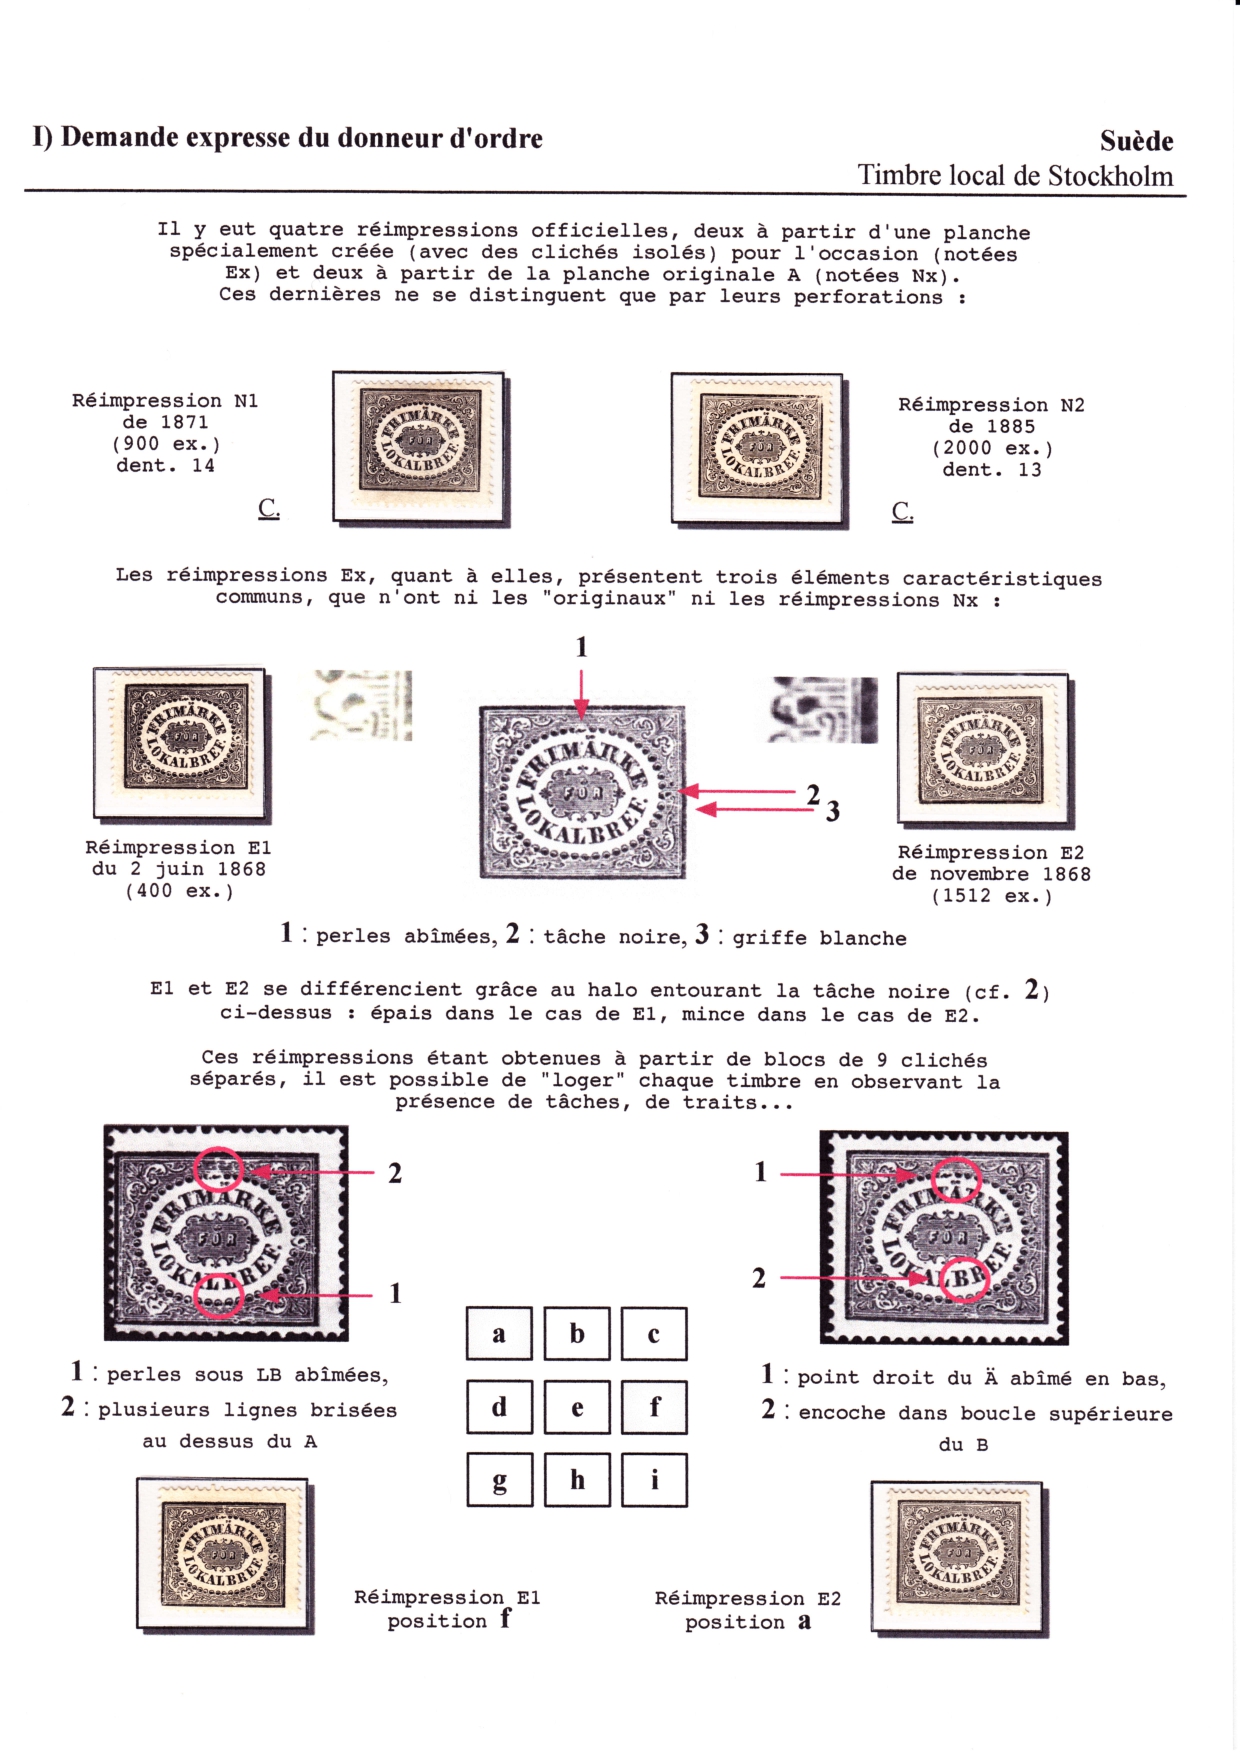 Les débuts des timbres sans valeur faciale apparente p. 12